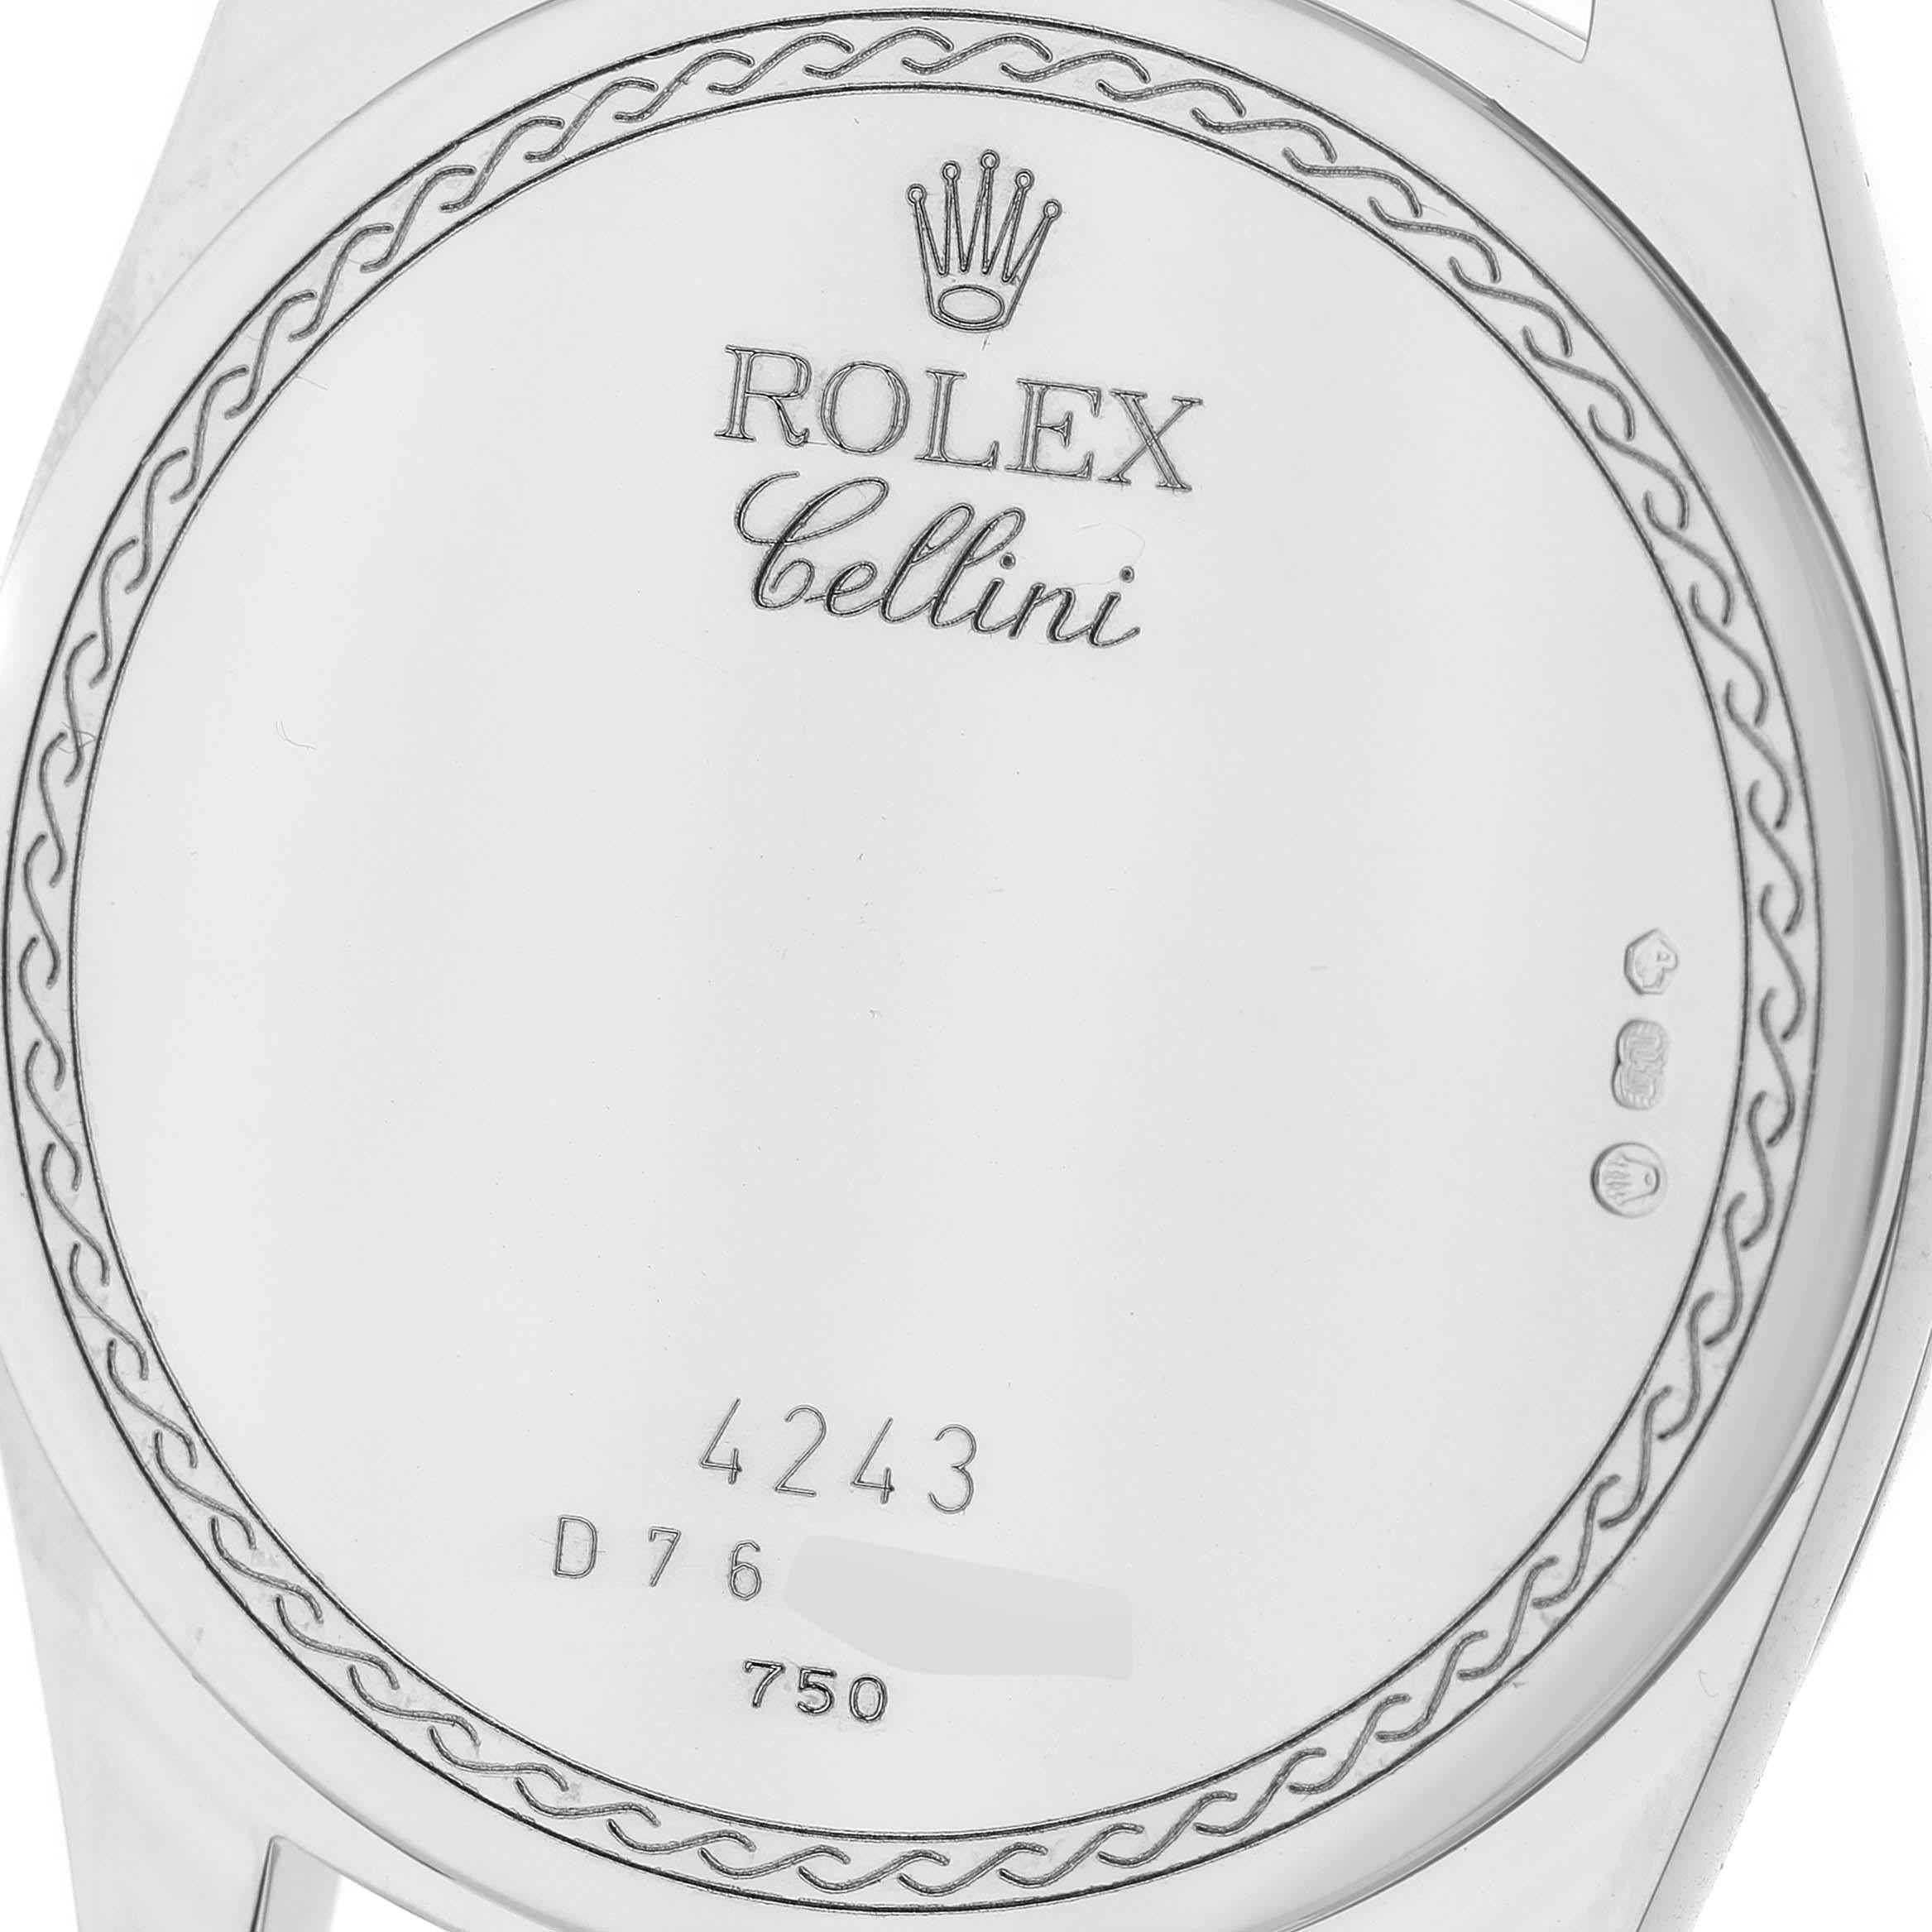 Rolex Cellini Danaos White Gold Silver Dial Mens Watch 4243 1